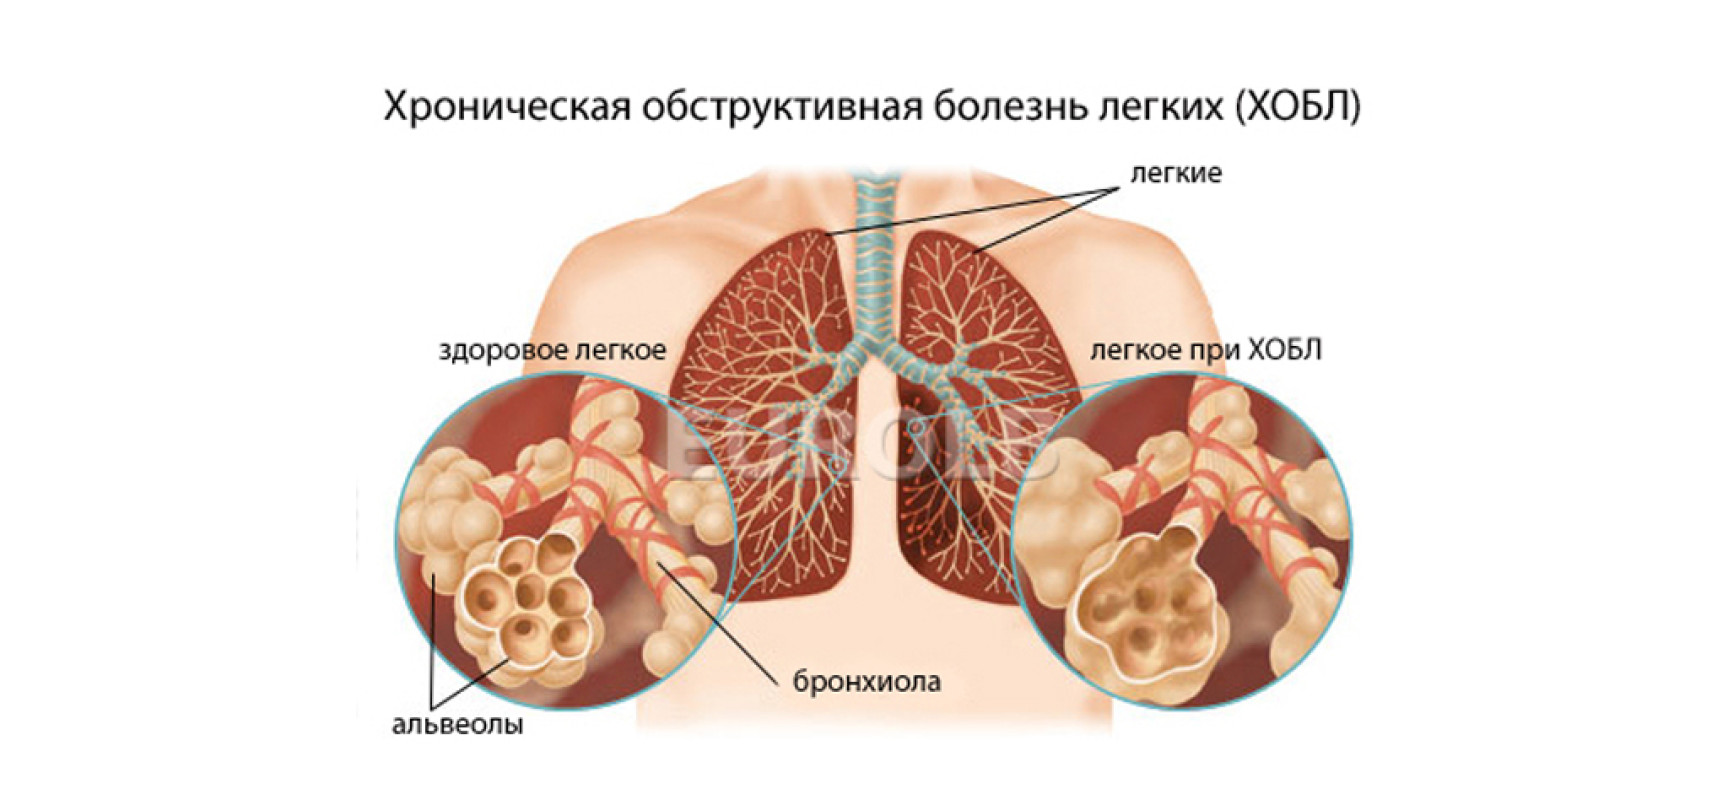 Какие болезни легких передаются от человека к человеку